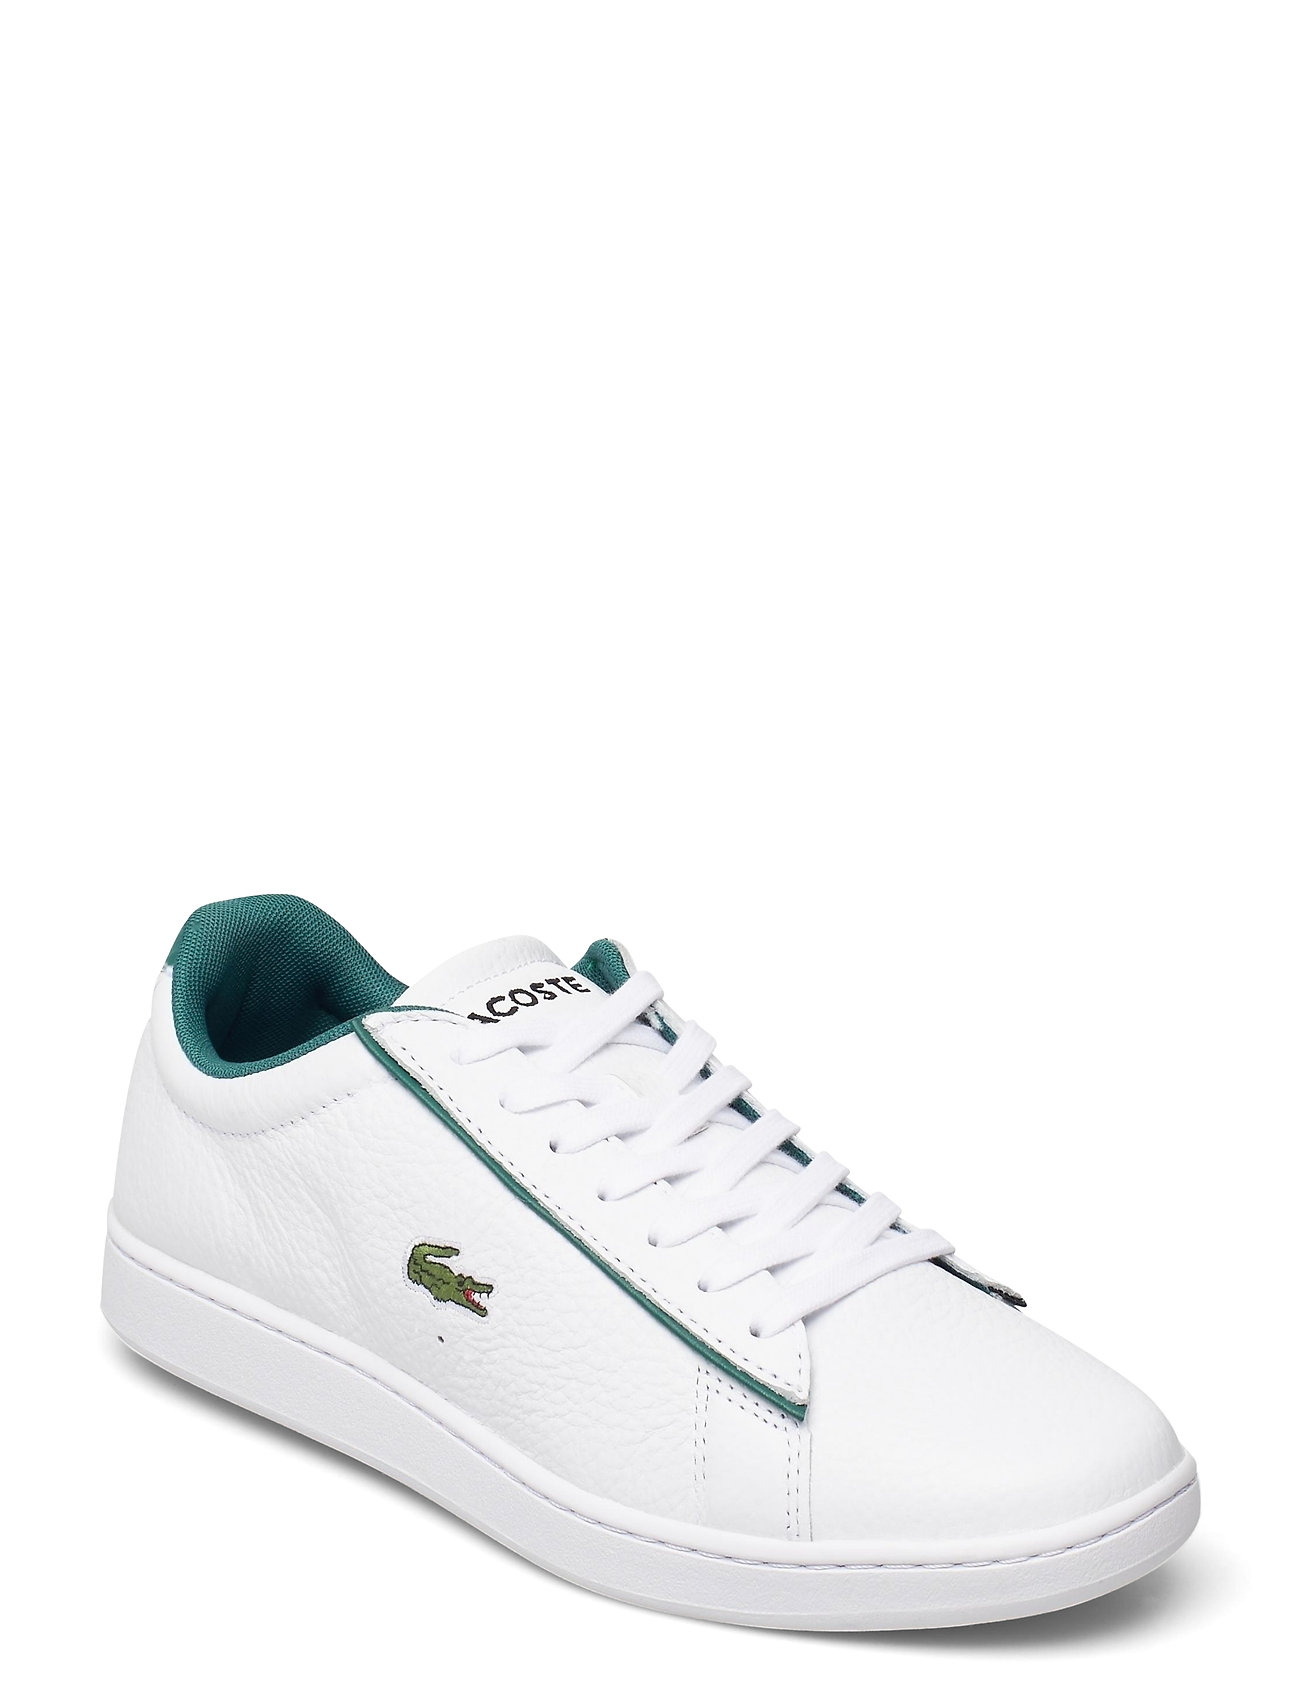 Carnaby Evo 1202sma Matalavartiset Sneakerit Tennarit Valkoinen Lacoste Shoes